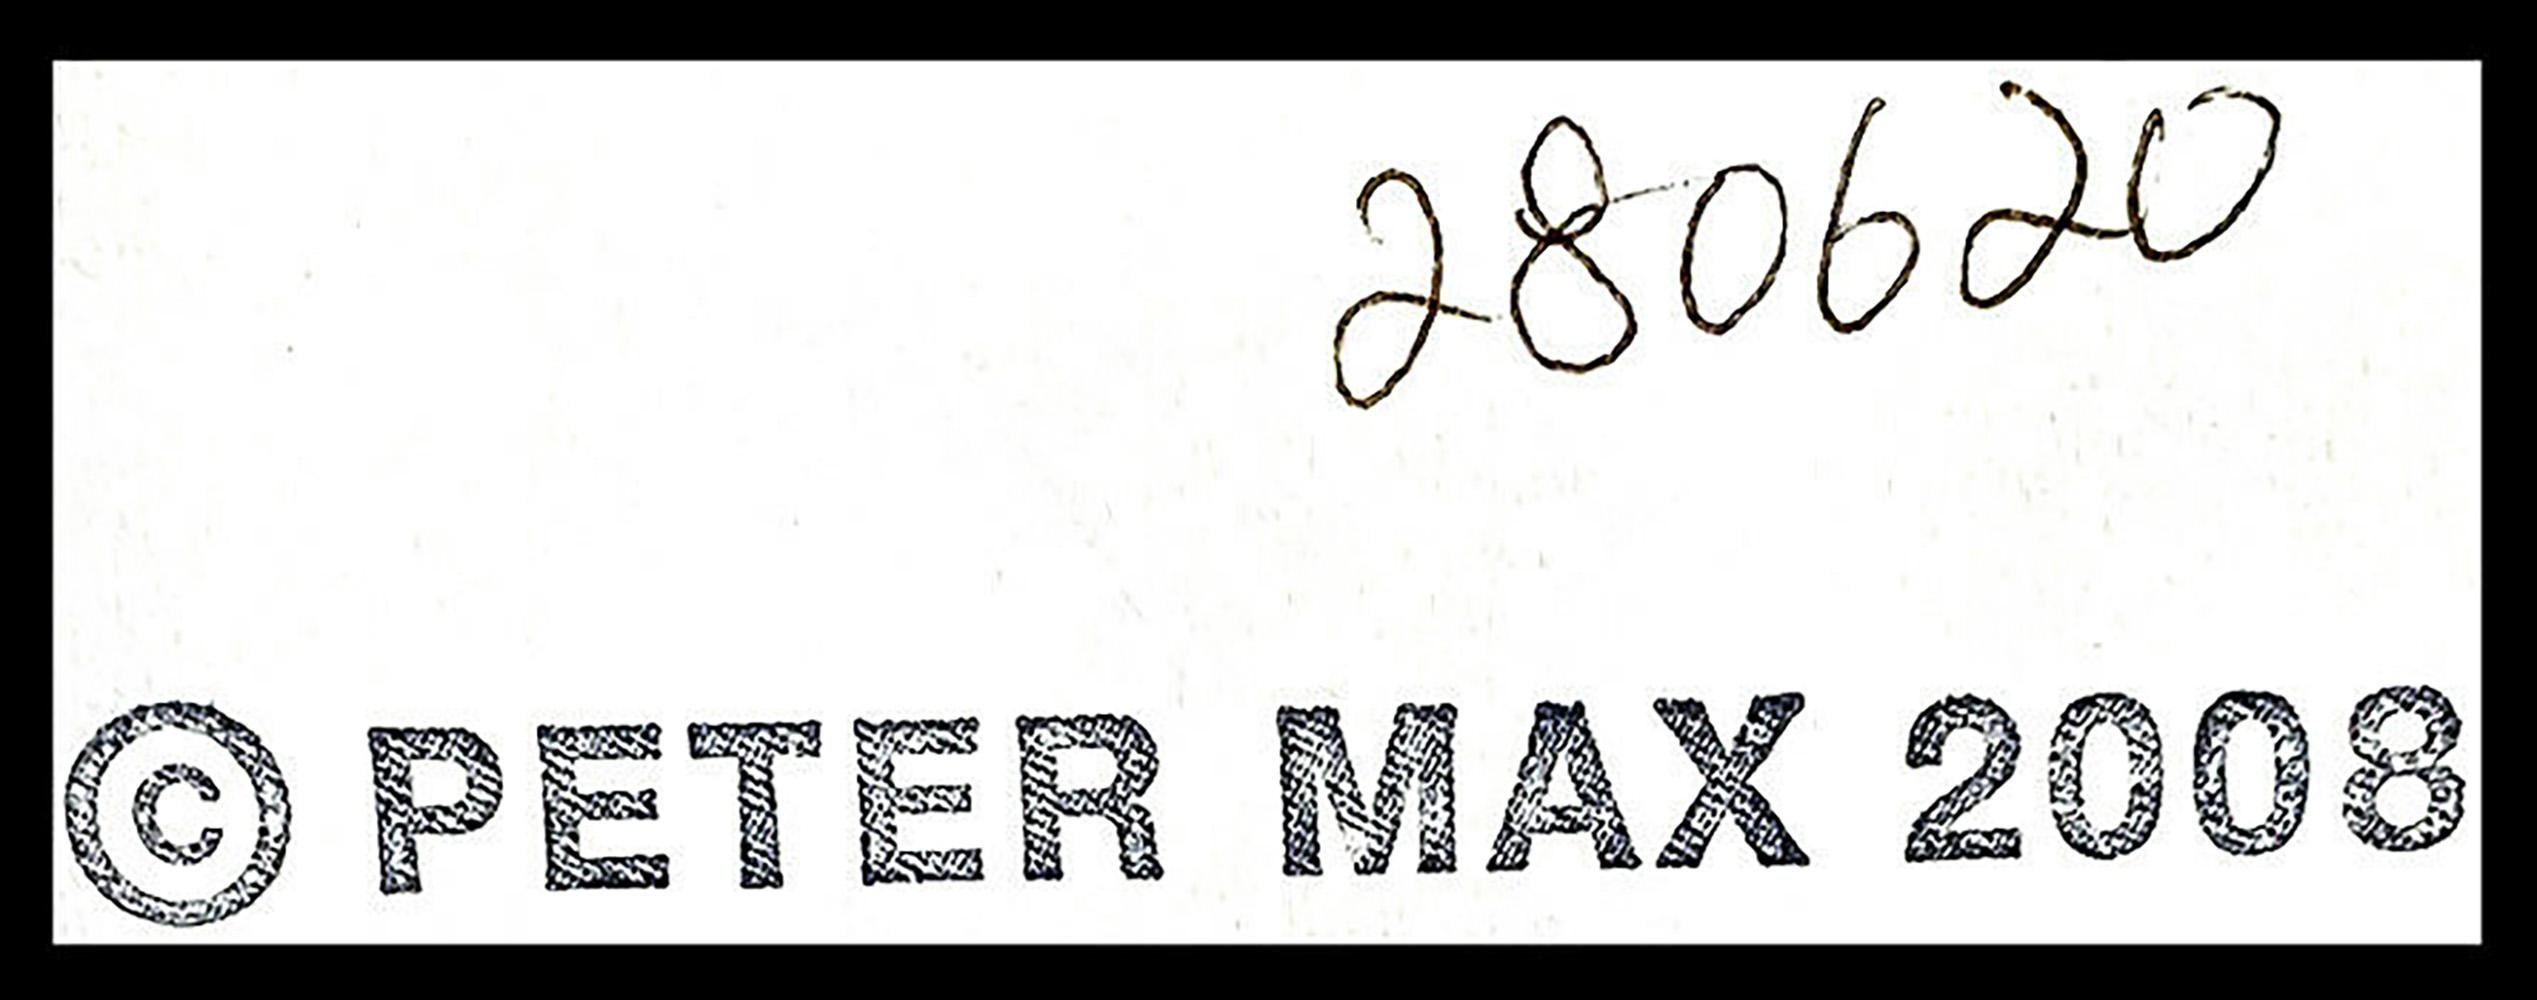 peter max liberty head original